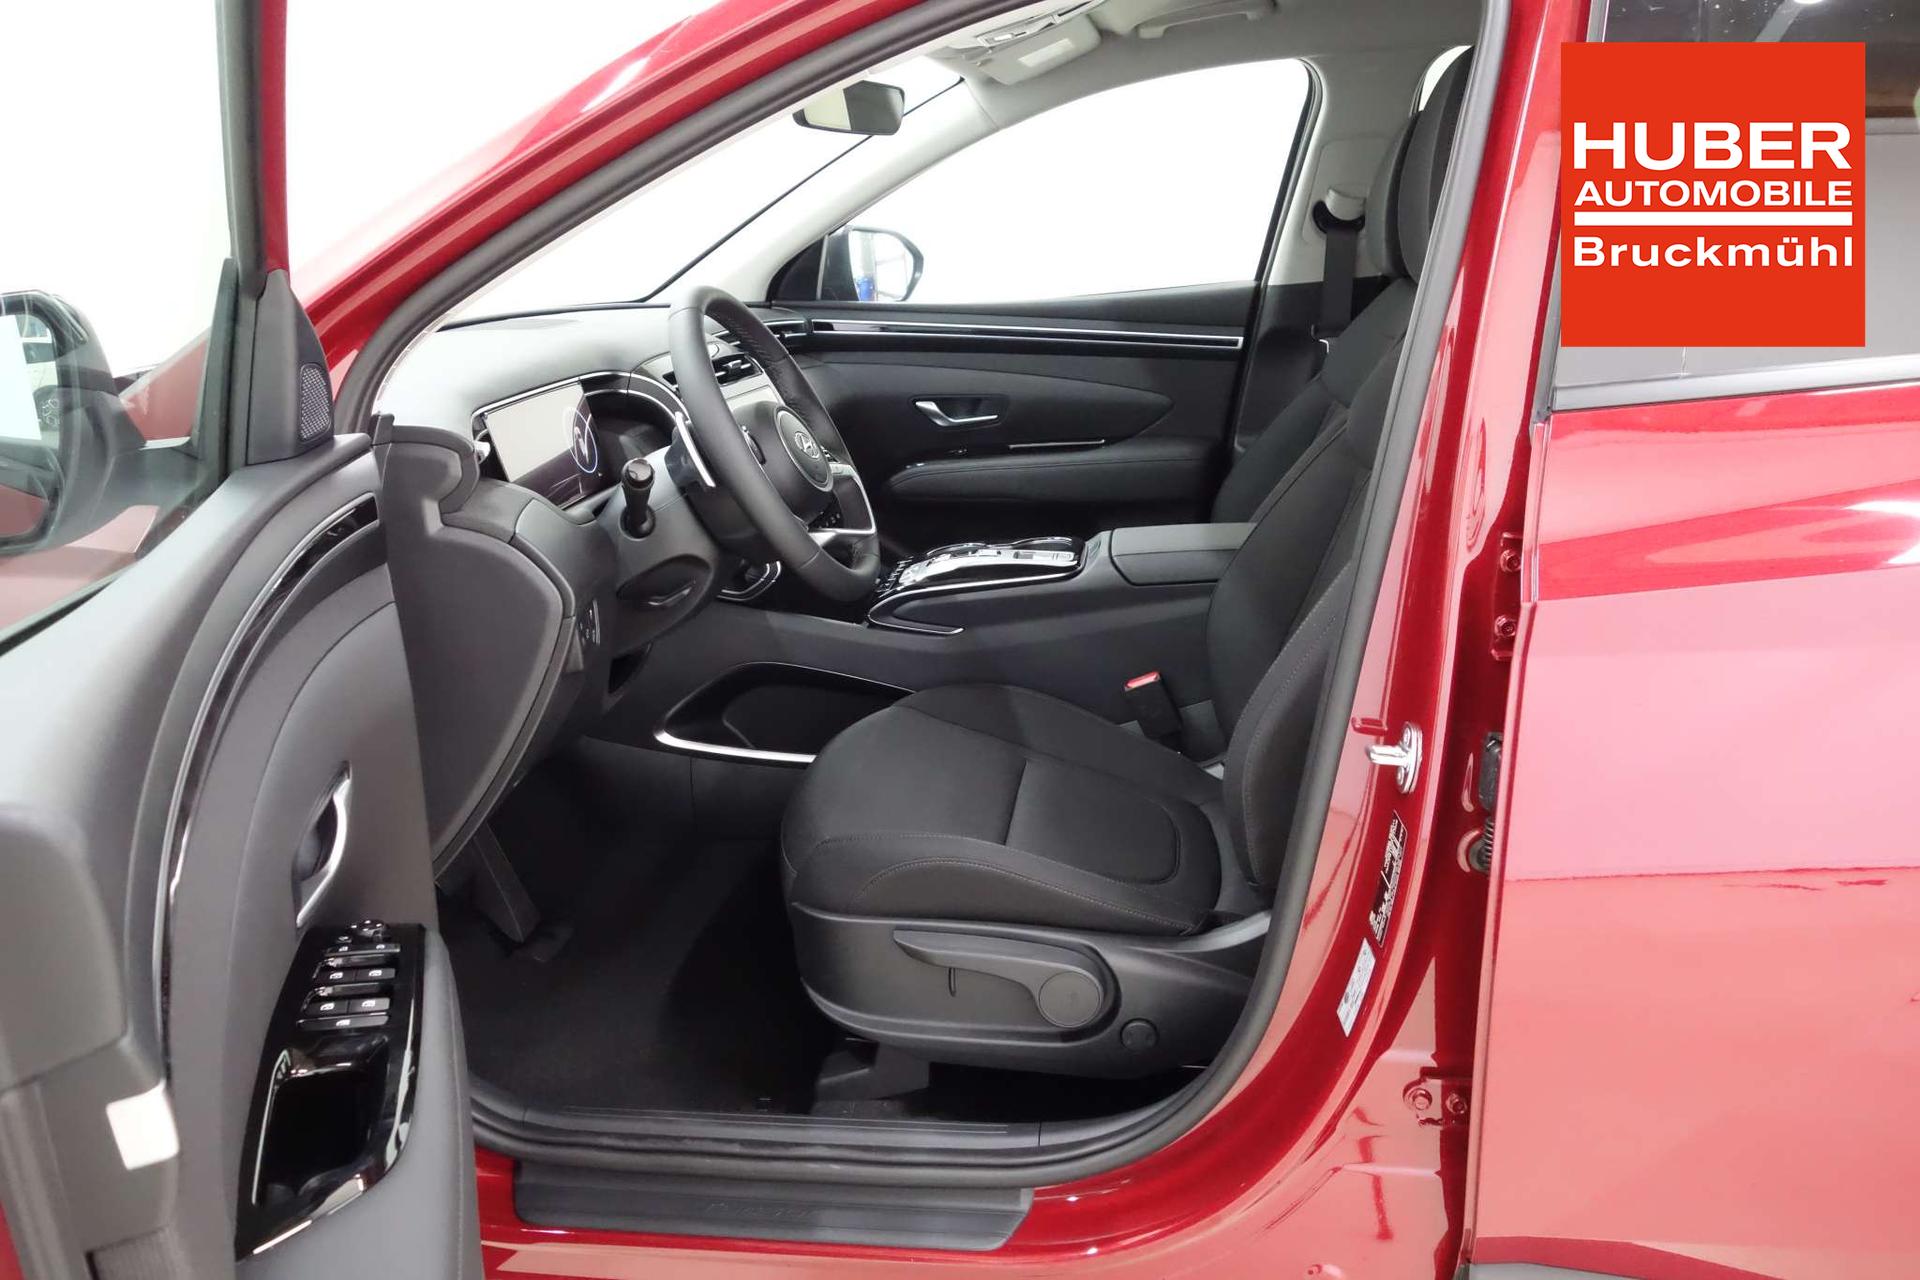 Hyundai TUCSON Trend Line 1.6 T-GDi HEV 4WD AT 110kW Smart Sense+ Paket,  Winter-Paket, Klimaautomatik, 10,25 Navigationssystem, Parksensoren vorne  und hinten, LED Licht, Kurvenlicht, 17 Zoll Leichtmetallfelgen, uvm.  Lagerfahrzeug Benzin Autom. 6-Gang